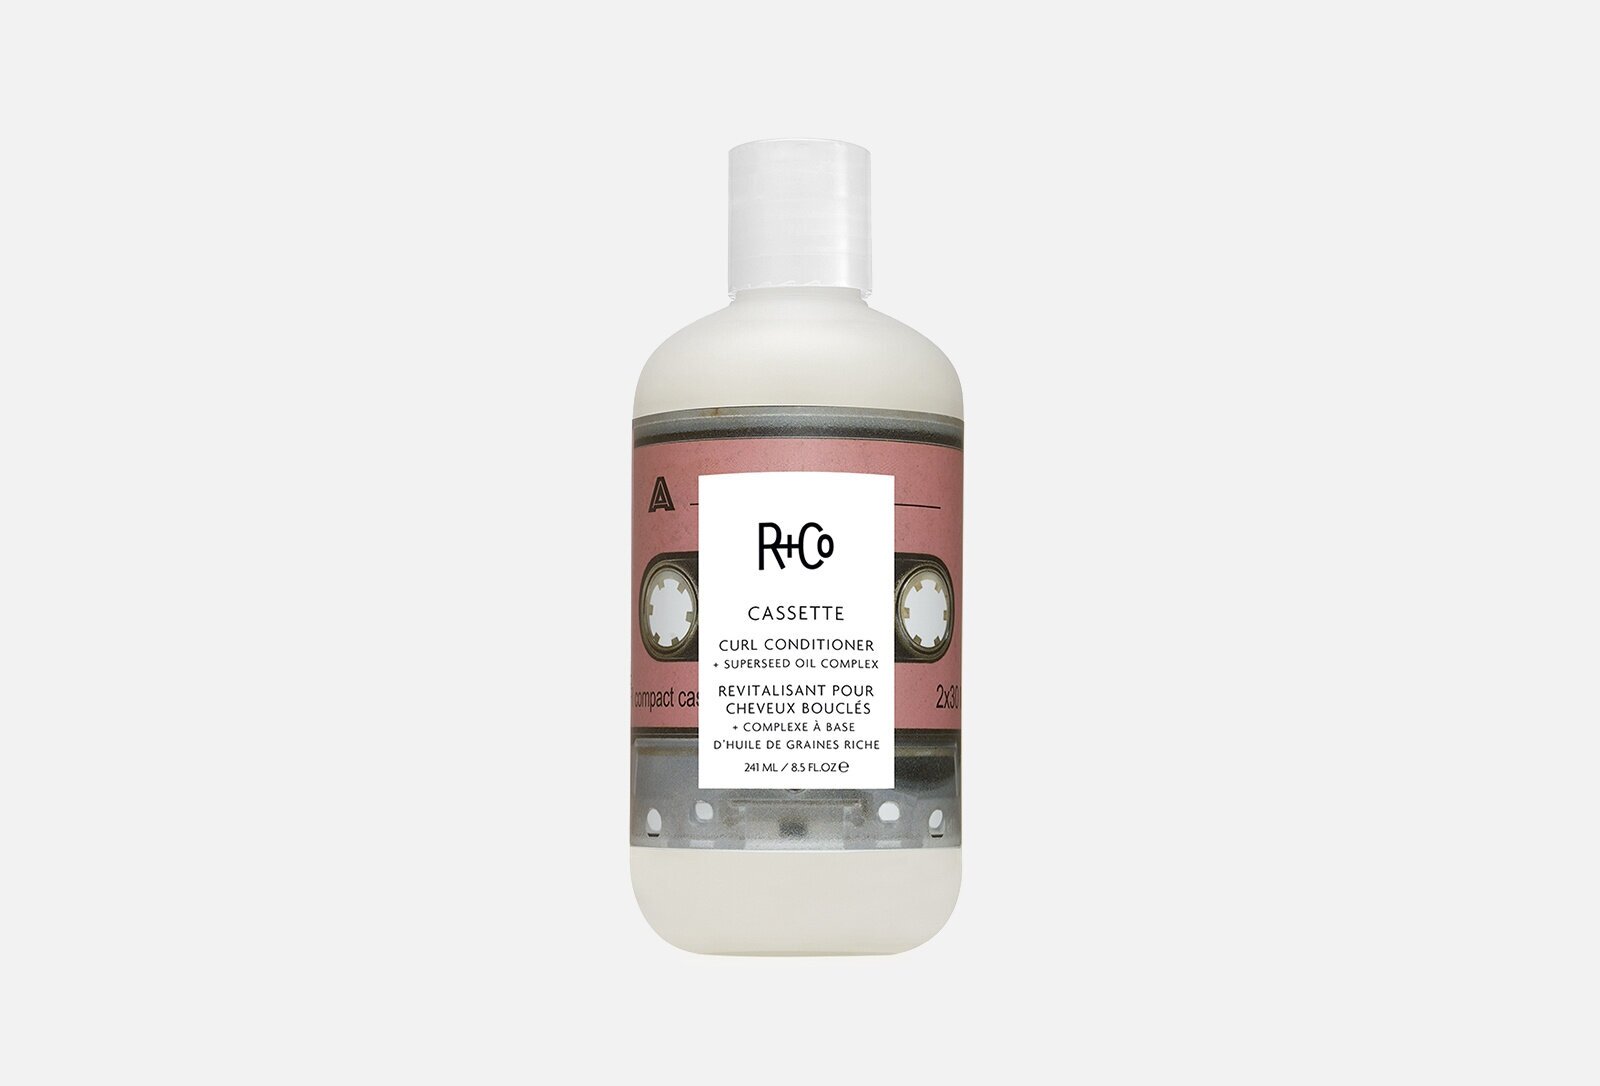 R+Co Кондиционер Cassette для вьющихся волос с комплексом масел, 251 мл, 250 г